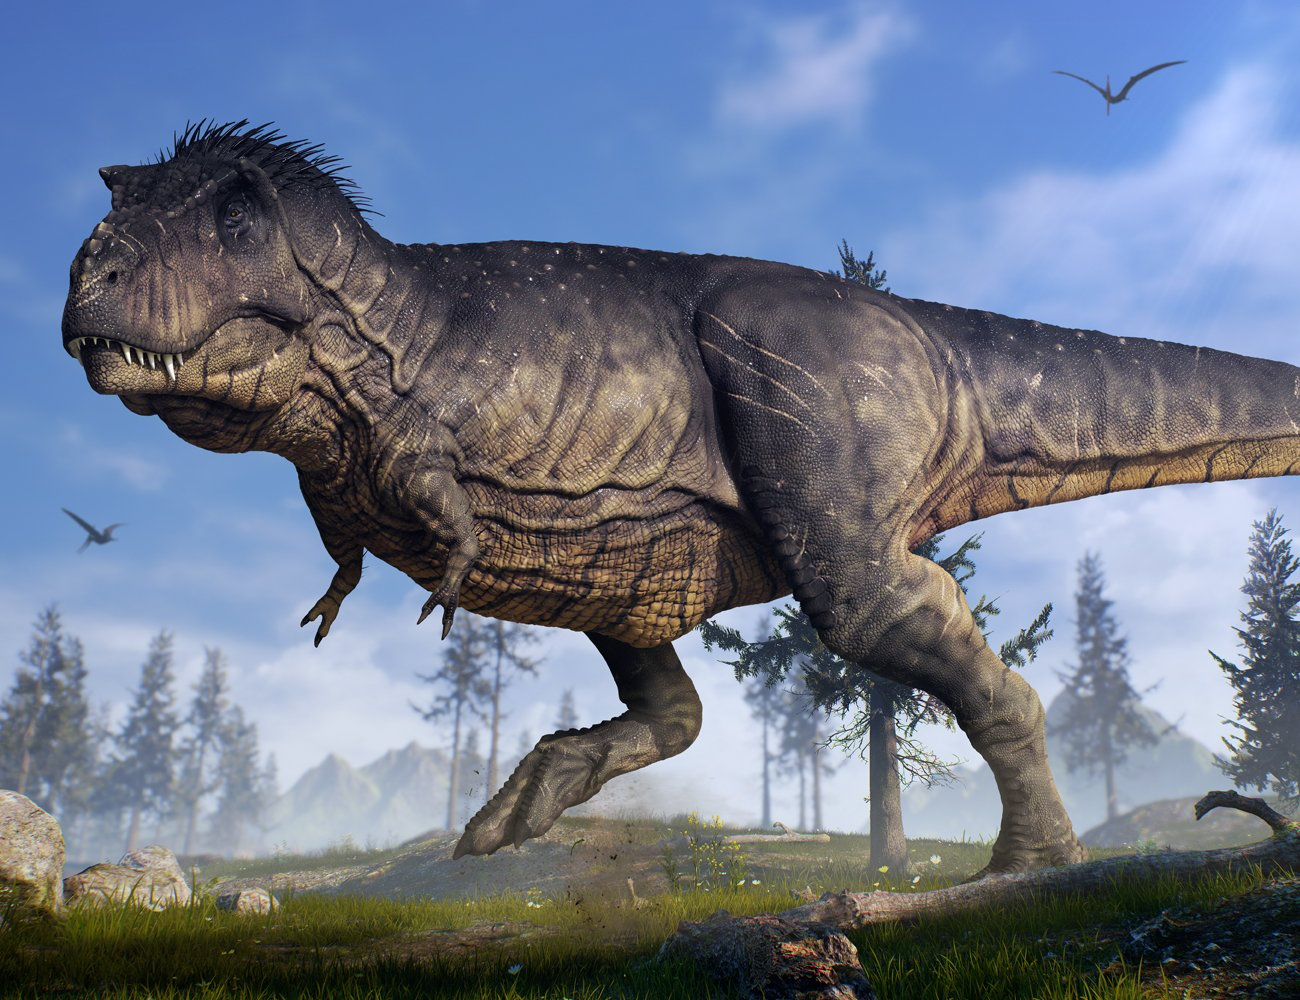 Tyrannosaurus Rex - Tyrant-Lizard King by: Herschel Hoffmeyer, 3D Models by Daz 3D